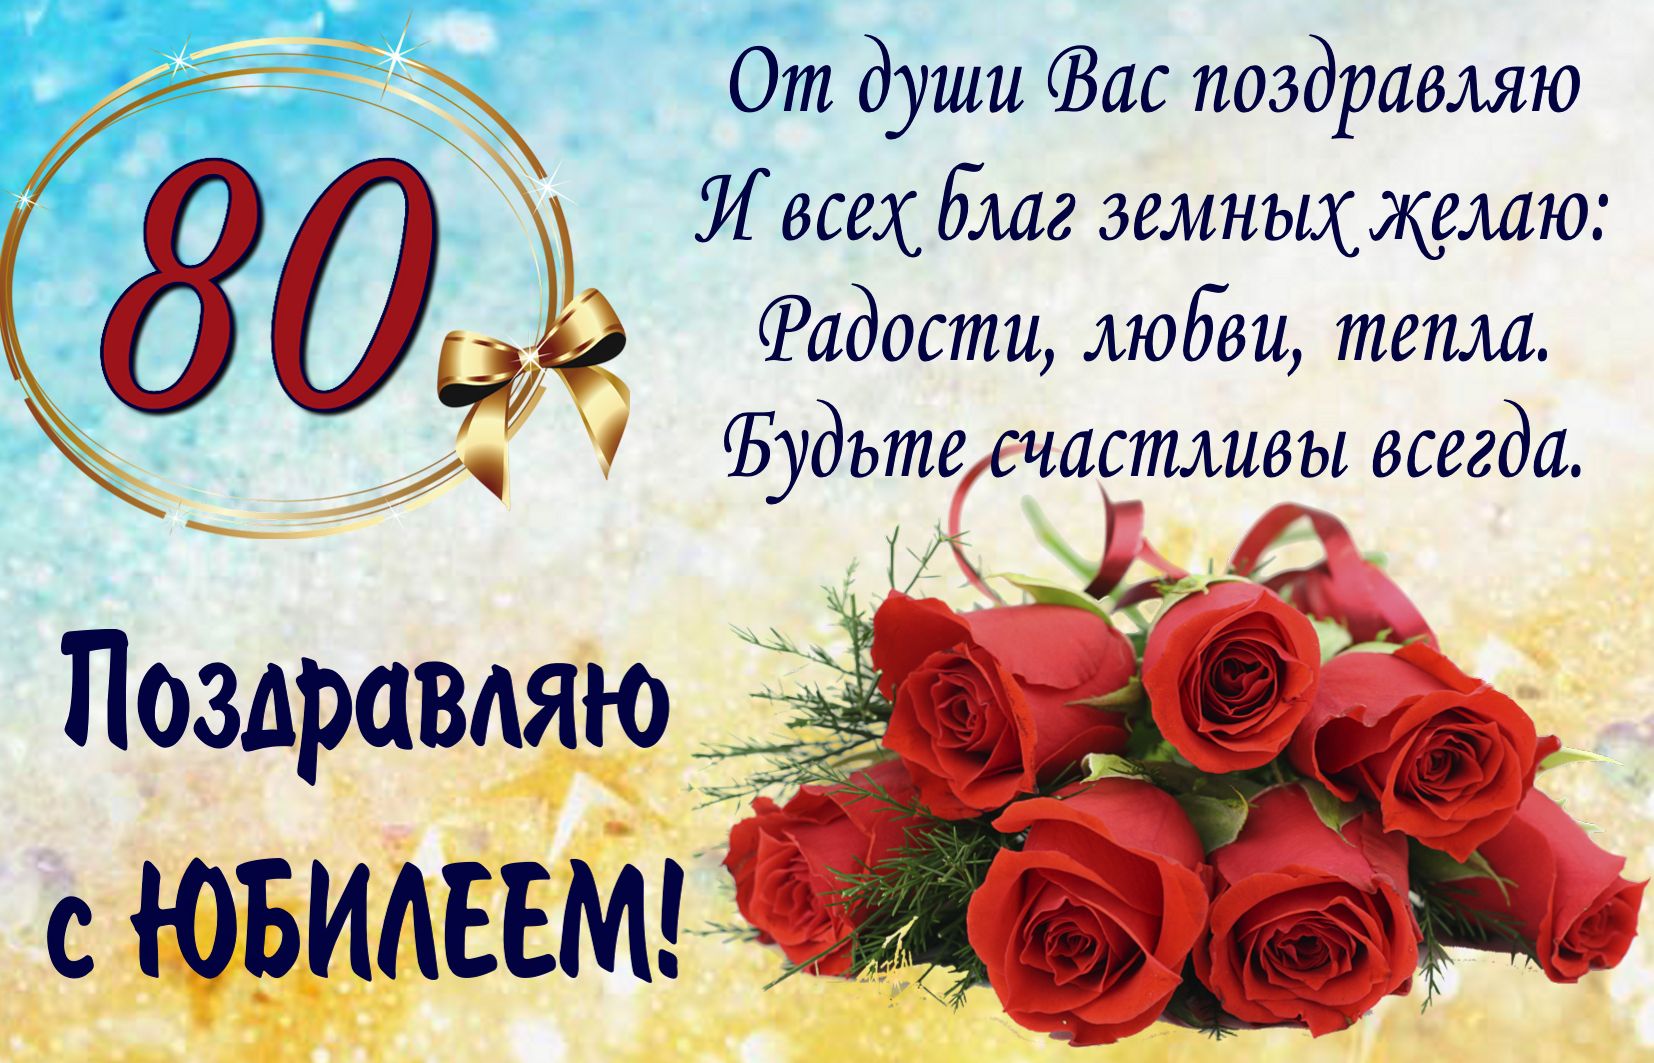 Открытка на юбилей 80 лет - поздравление с букетом красных роз